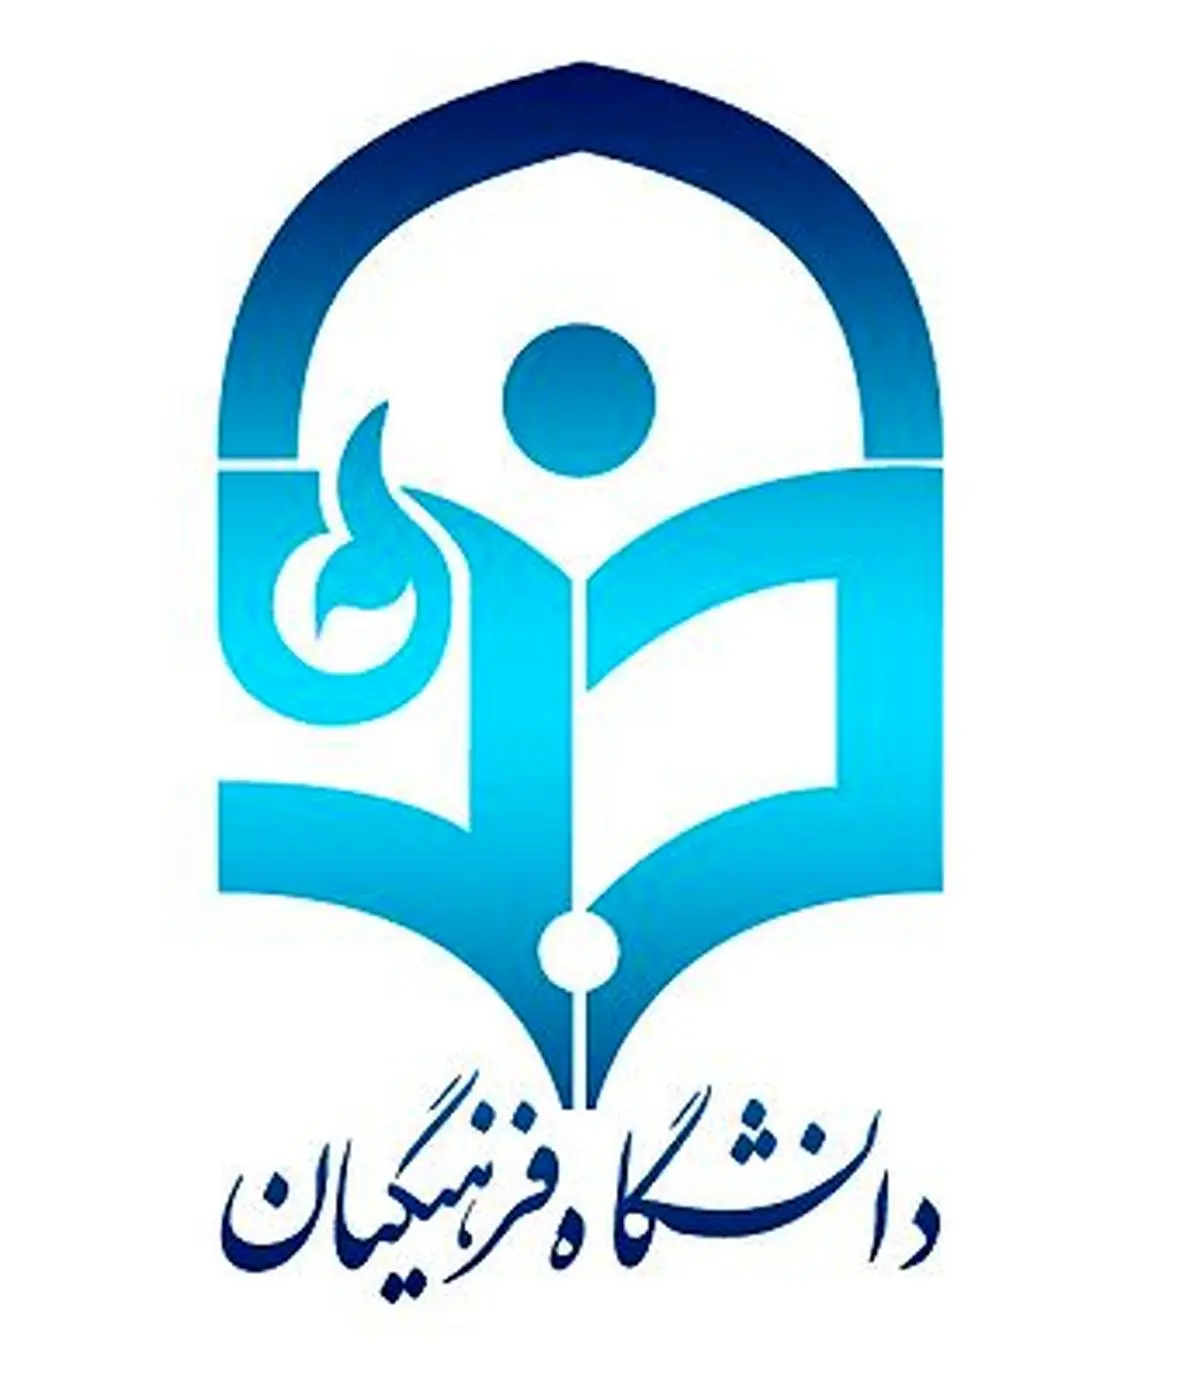 زمان اعلام نتایج آزمون اصلح دانشگاه فرهنگیان اعلام شد / ثبت اعتراض از 18 آبان

